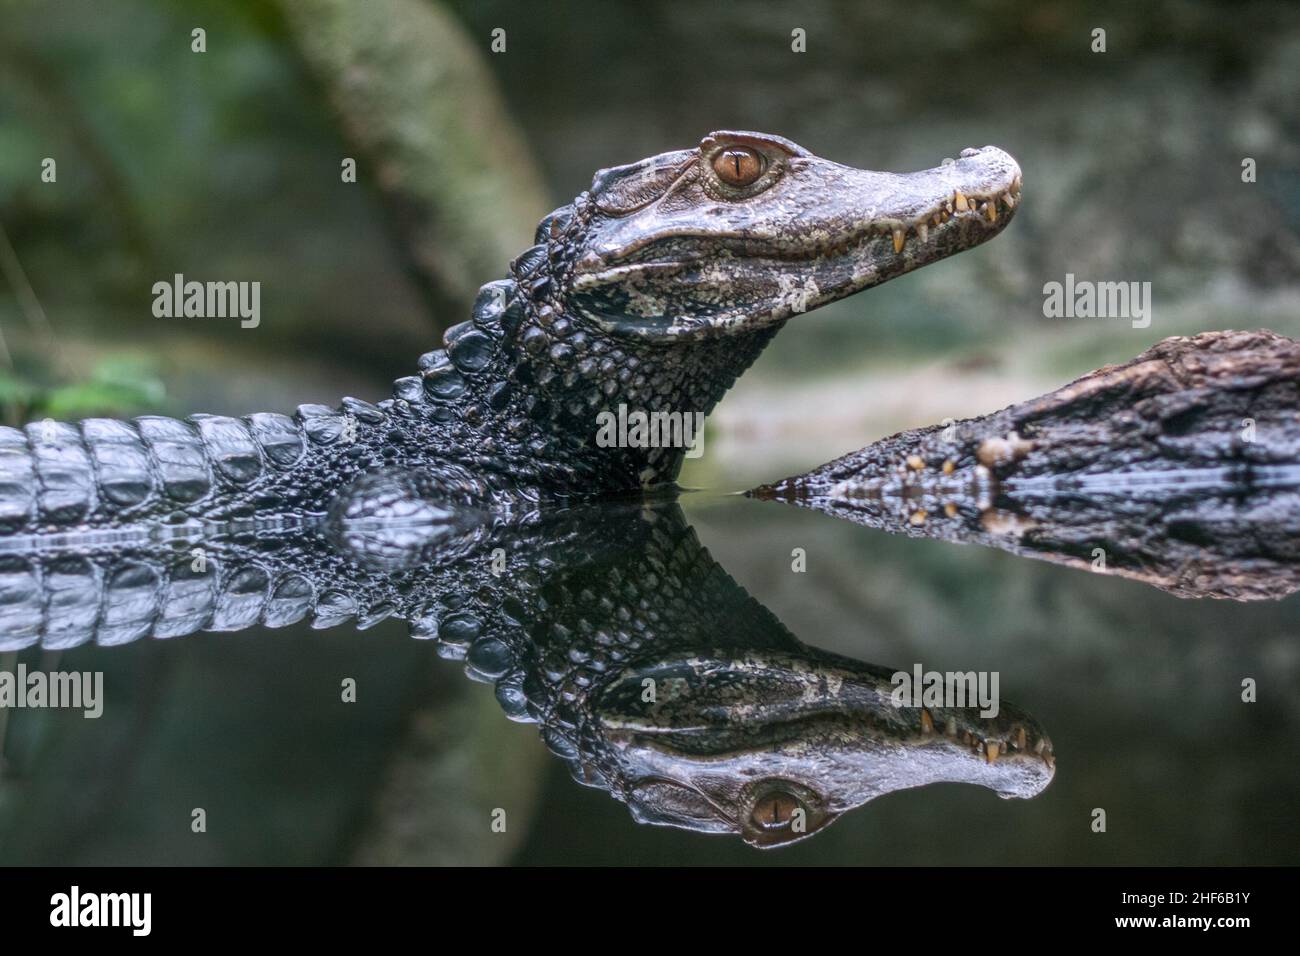 Réflexion du caiman spectaculaire - Caiman crocodilus dans l'eau. Banque D'Images